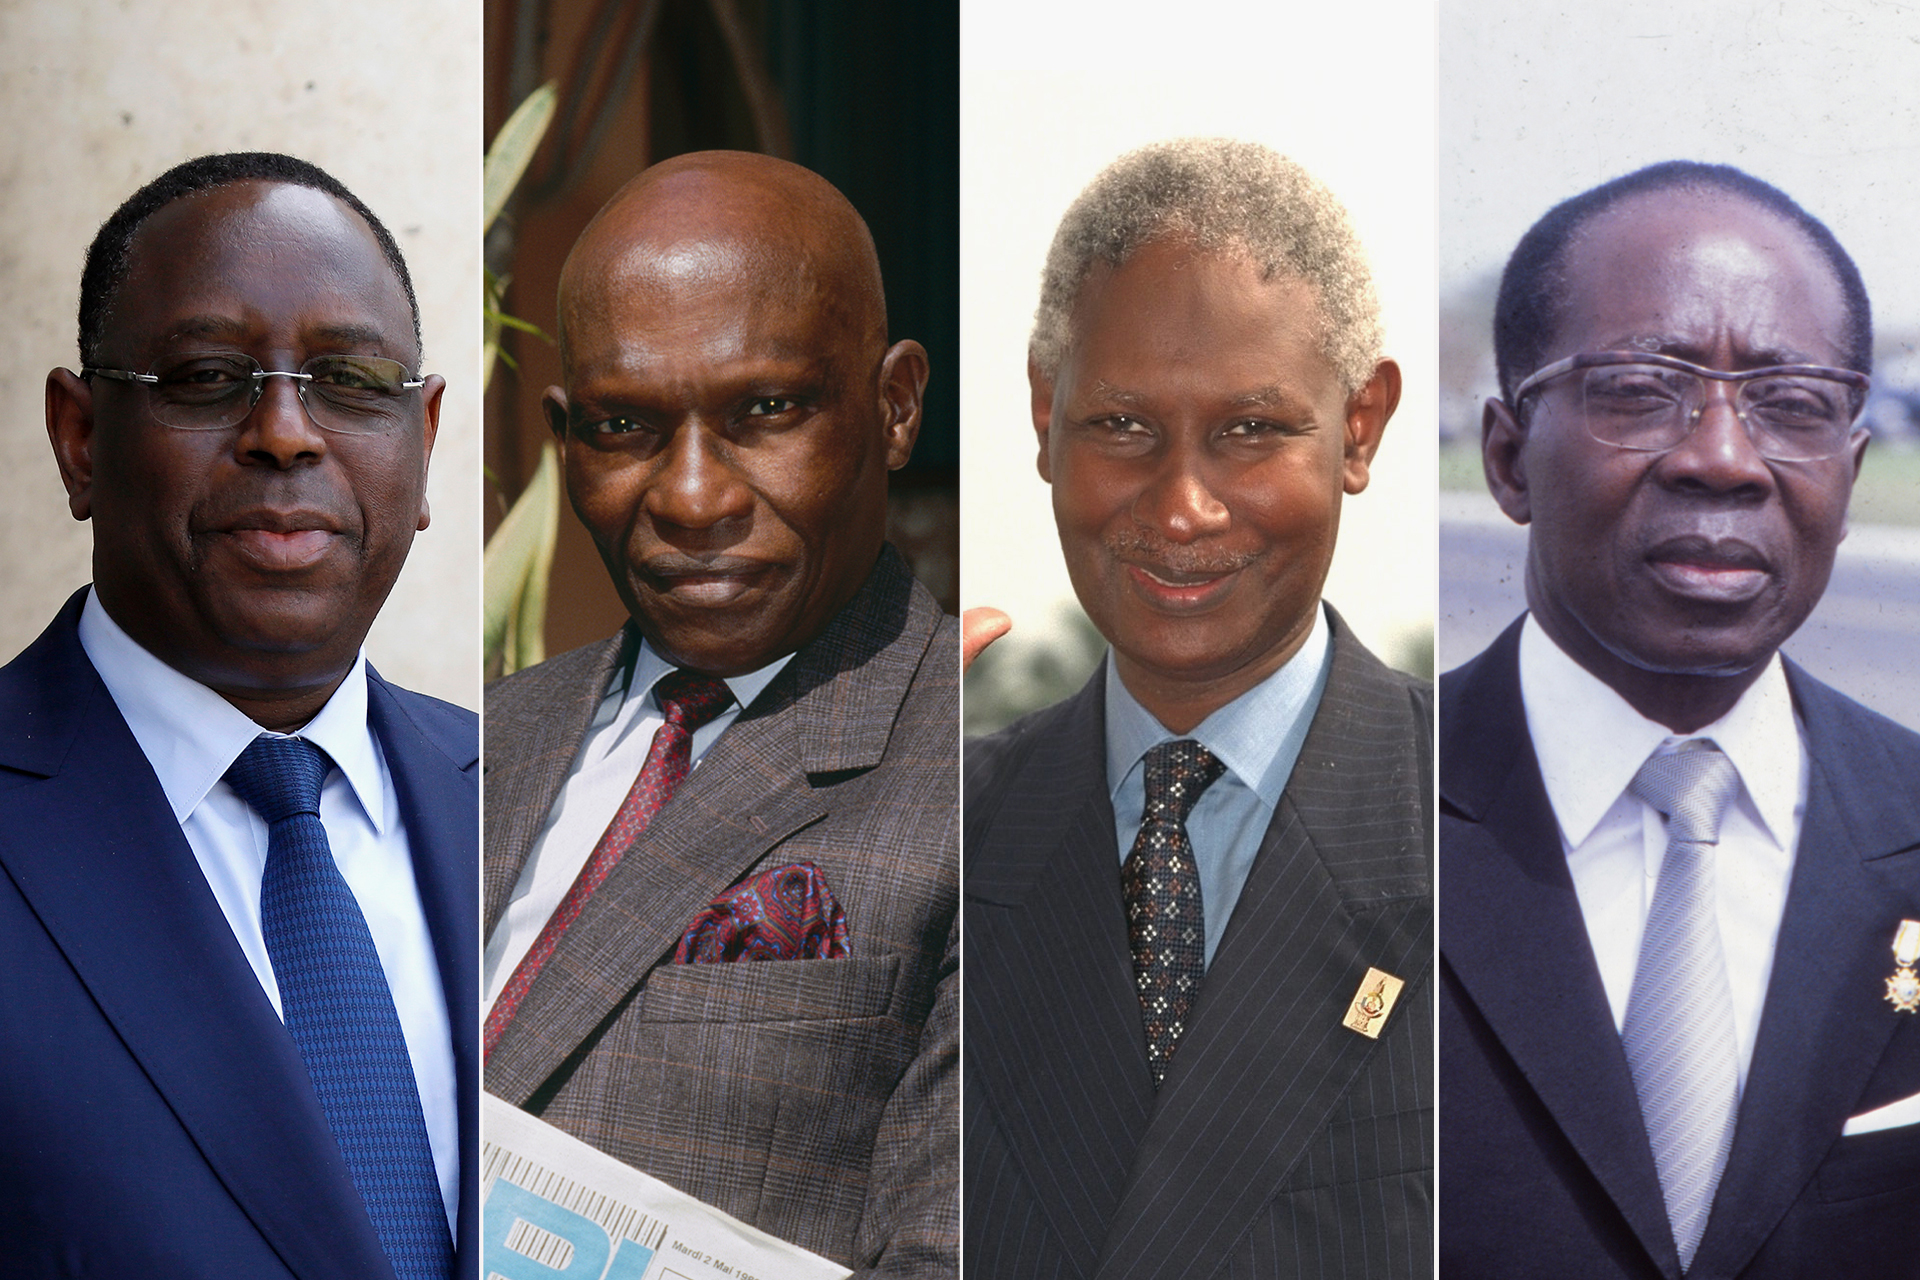 الرؤساء السنغاليون.. رضوخ متأخر للديمقراطية في محيط ملتهب بالانقلابات | سياسة – البوكس نيوز